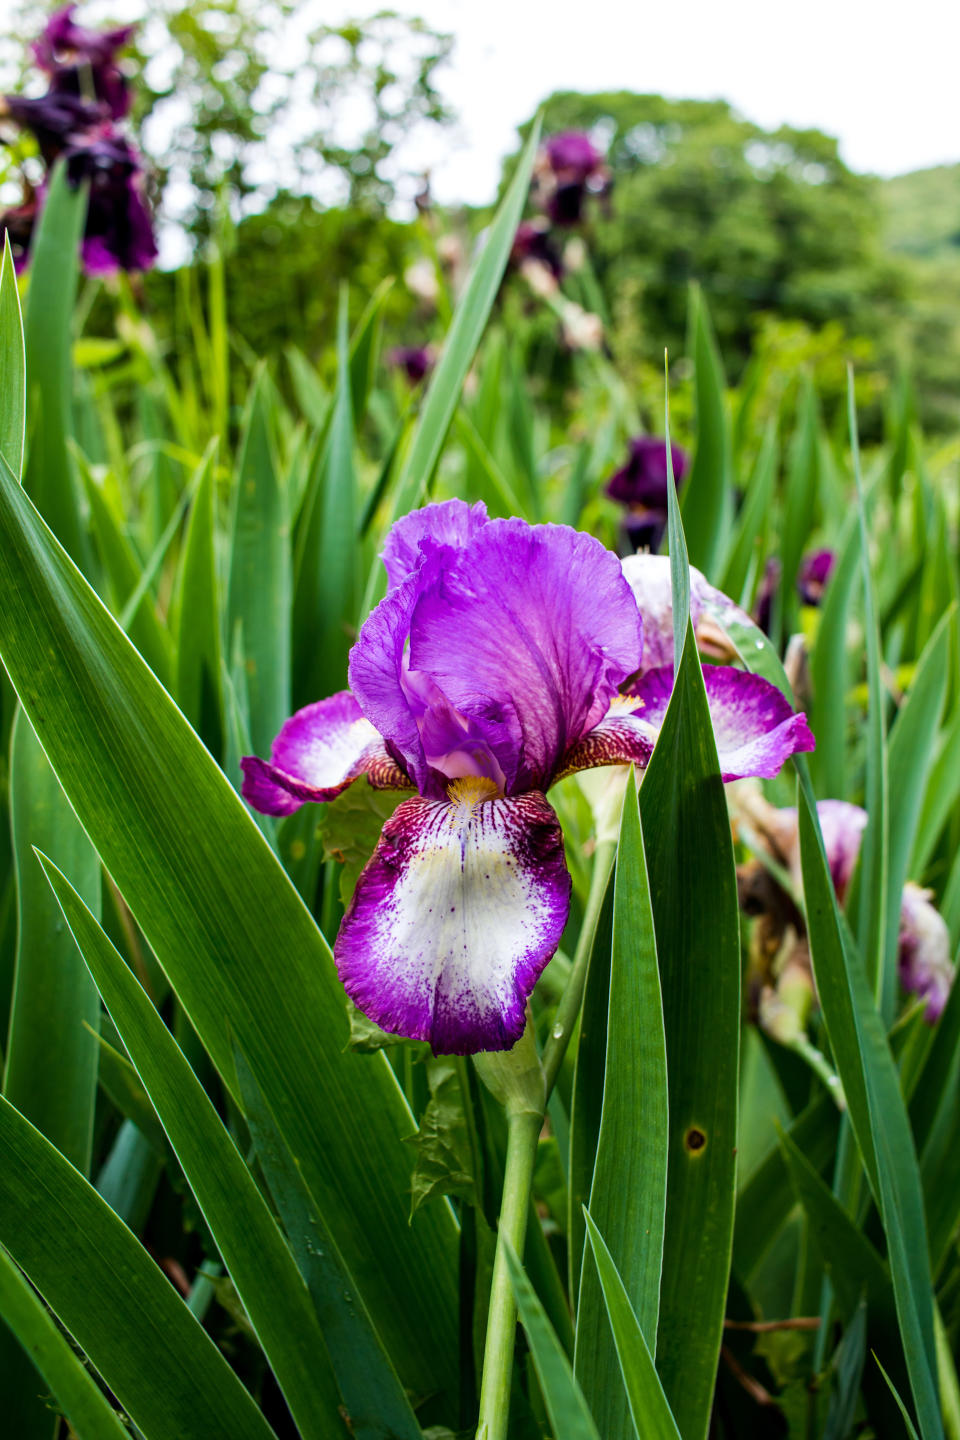 8. Bearded iris